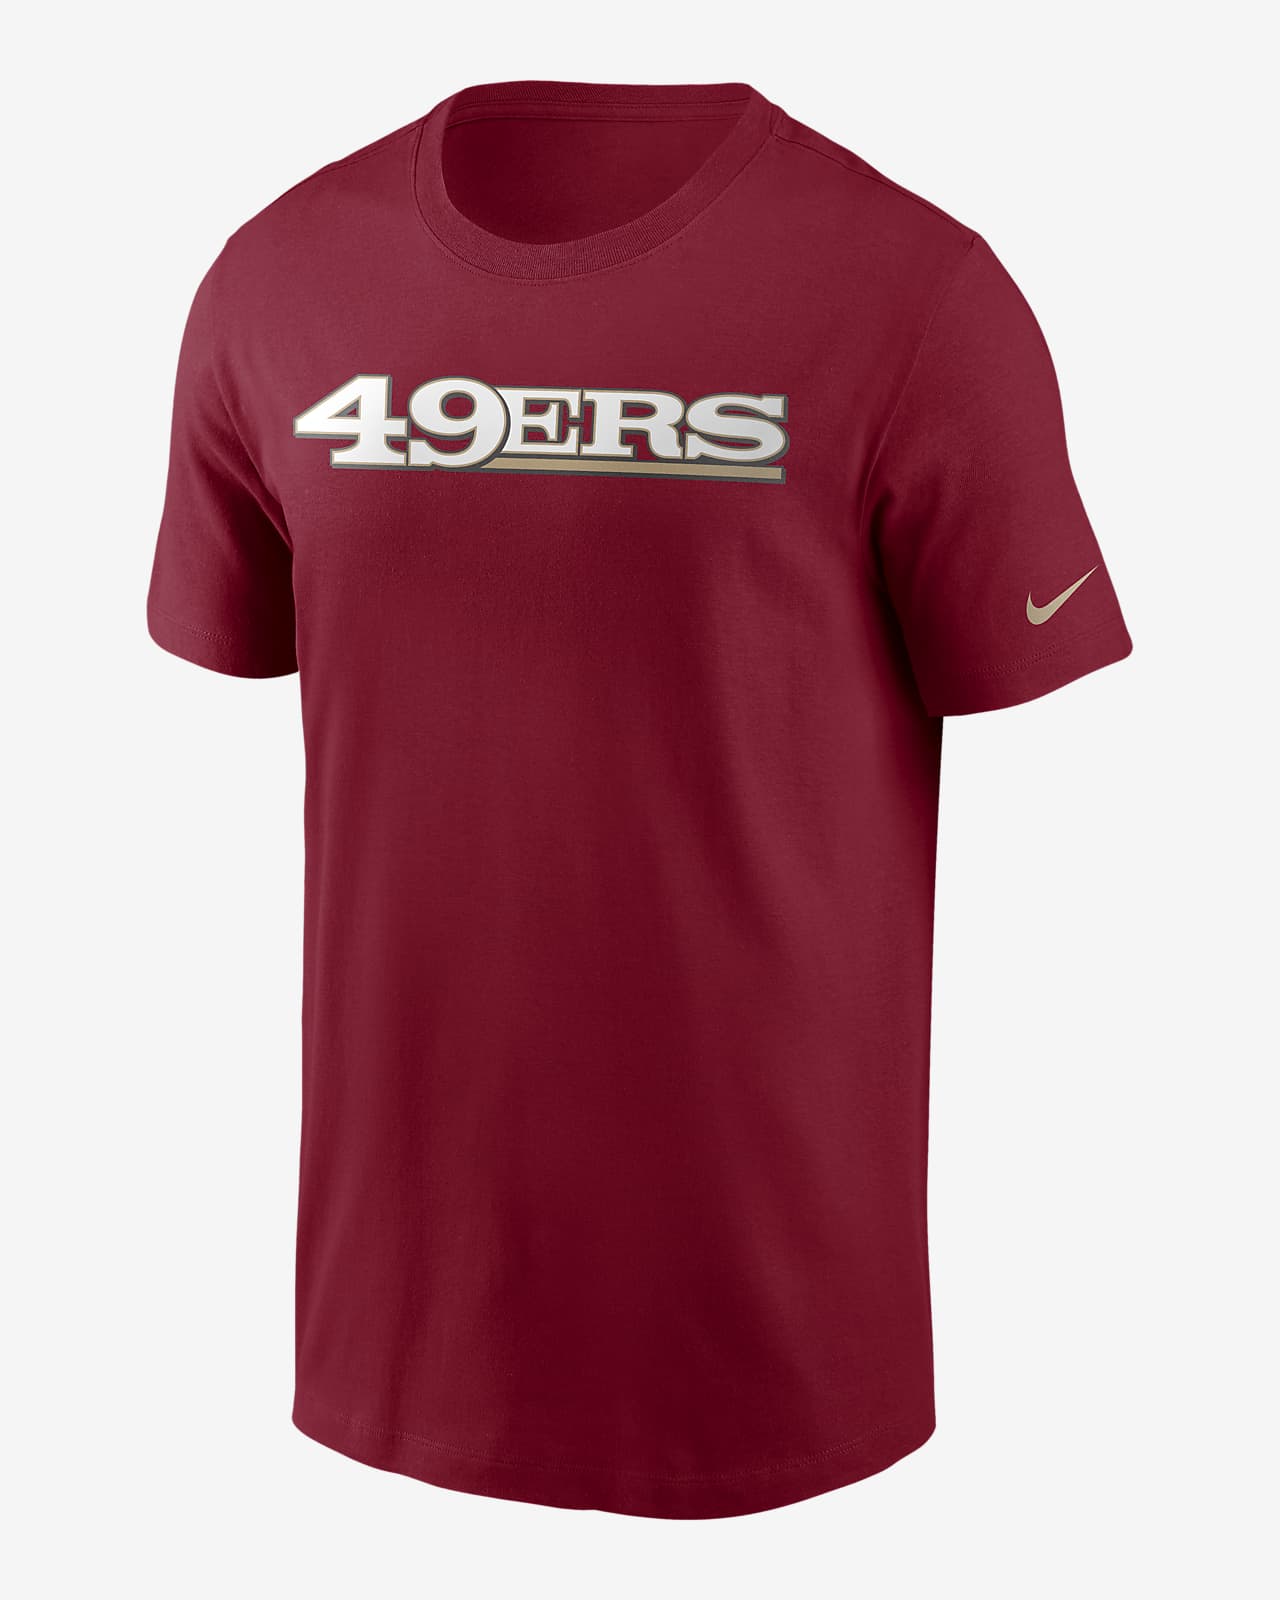 los 49ers shirt